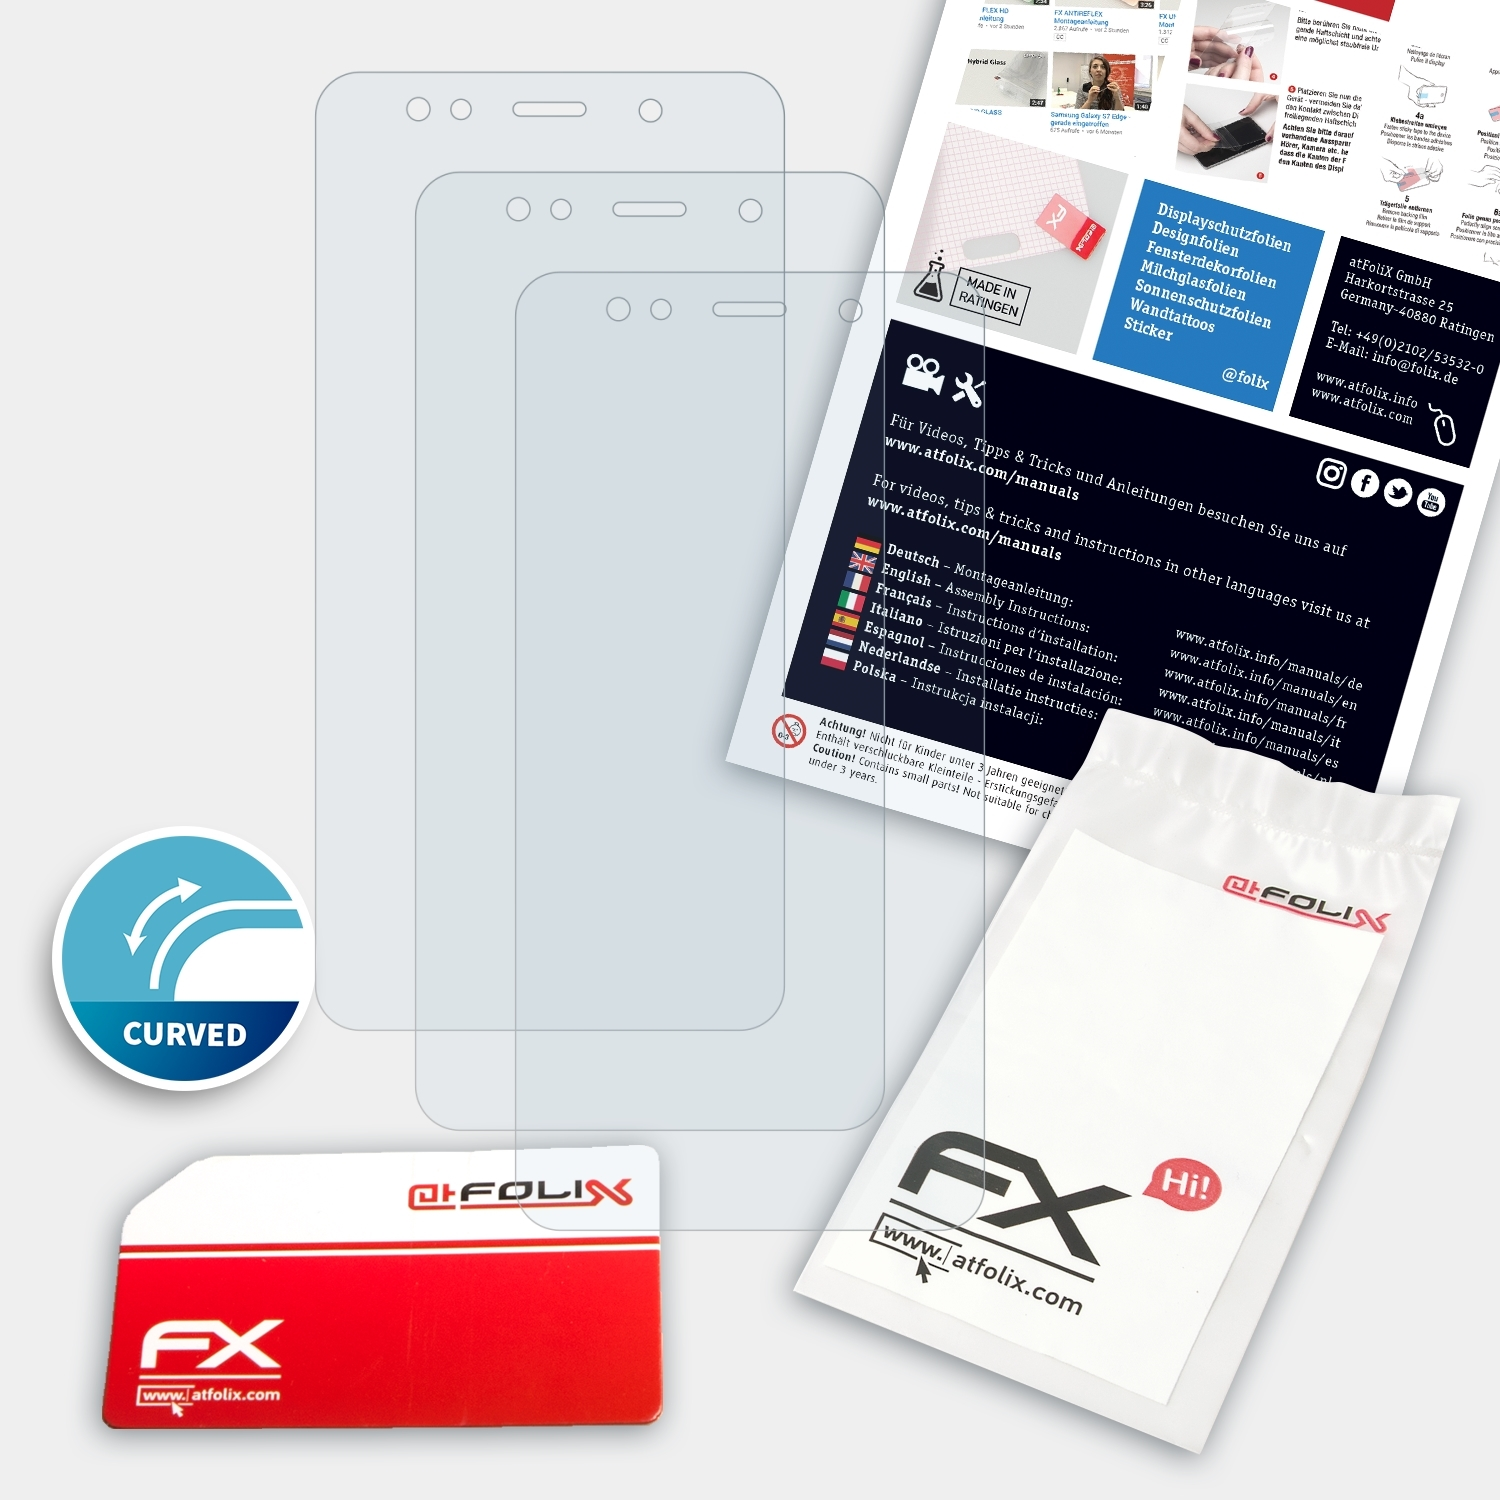 ATFOLIX 3x FX-ActiFleX Displayschutz(für GS180) Gigaset